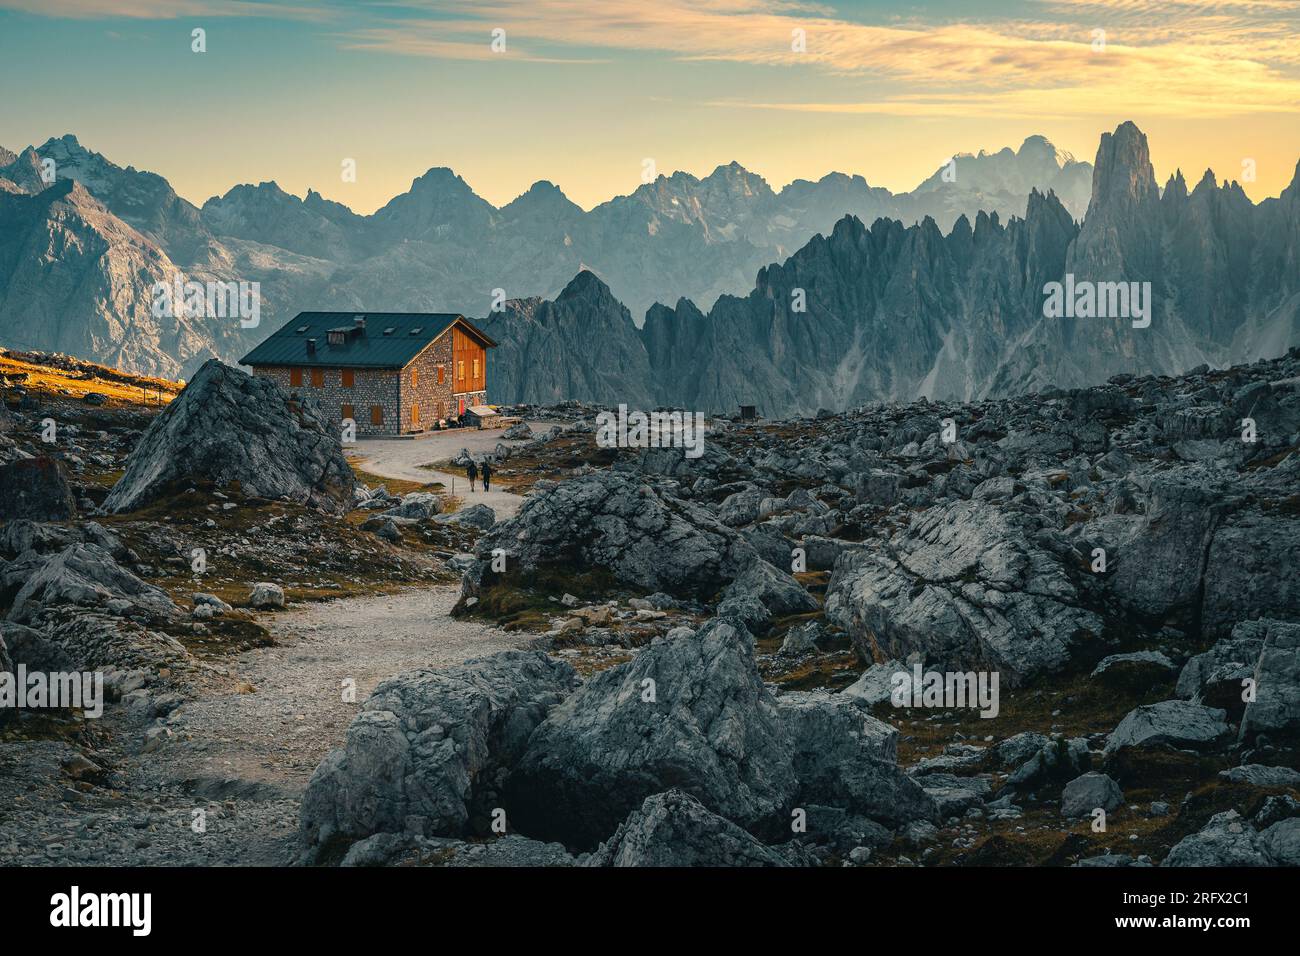 Abri de montagne et célèbres pics de dentelle du groupe de montagnes Cadini au coucher du soleil, Dolomites, Italie, Europe Banque D'Images